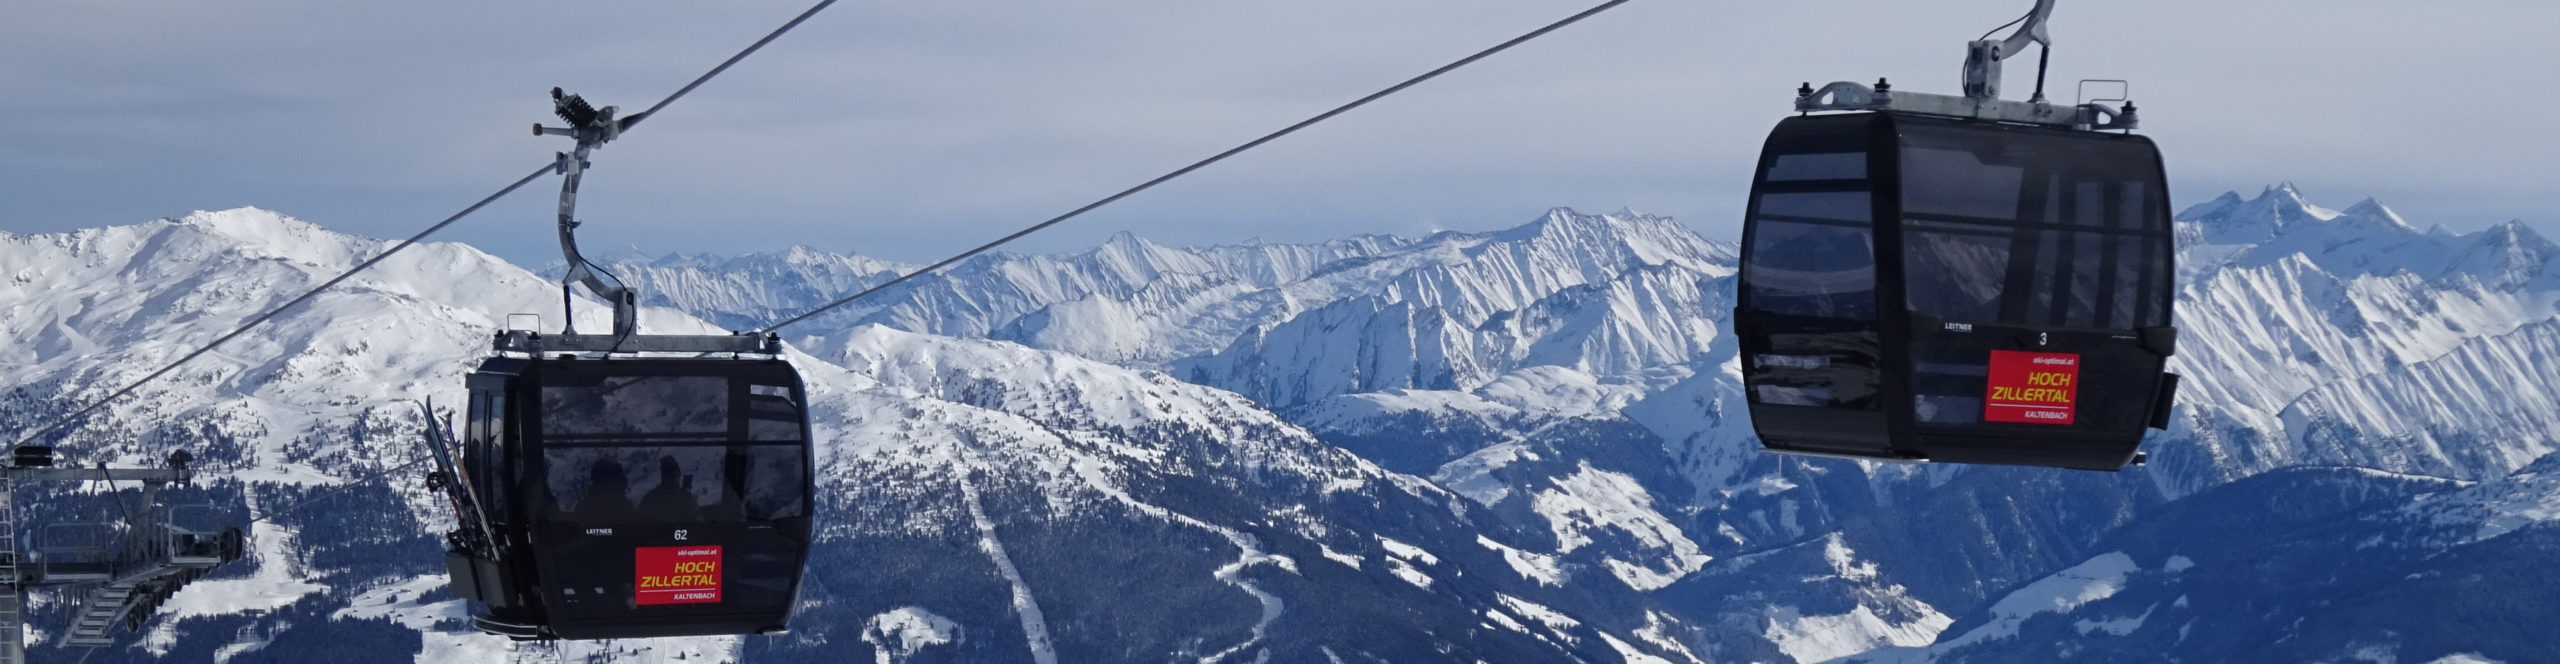 ZILLERTAL – verlängertes Skiwochenende mit 4 Skitagen – in den Faschingsferien – Hotel in Strass 